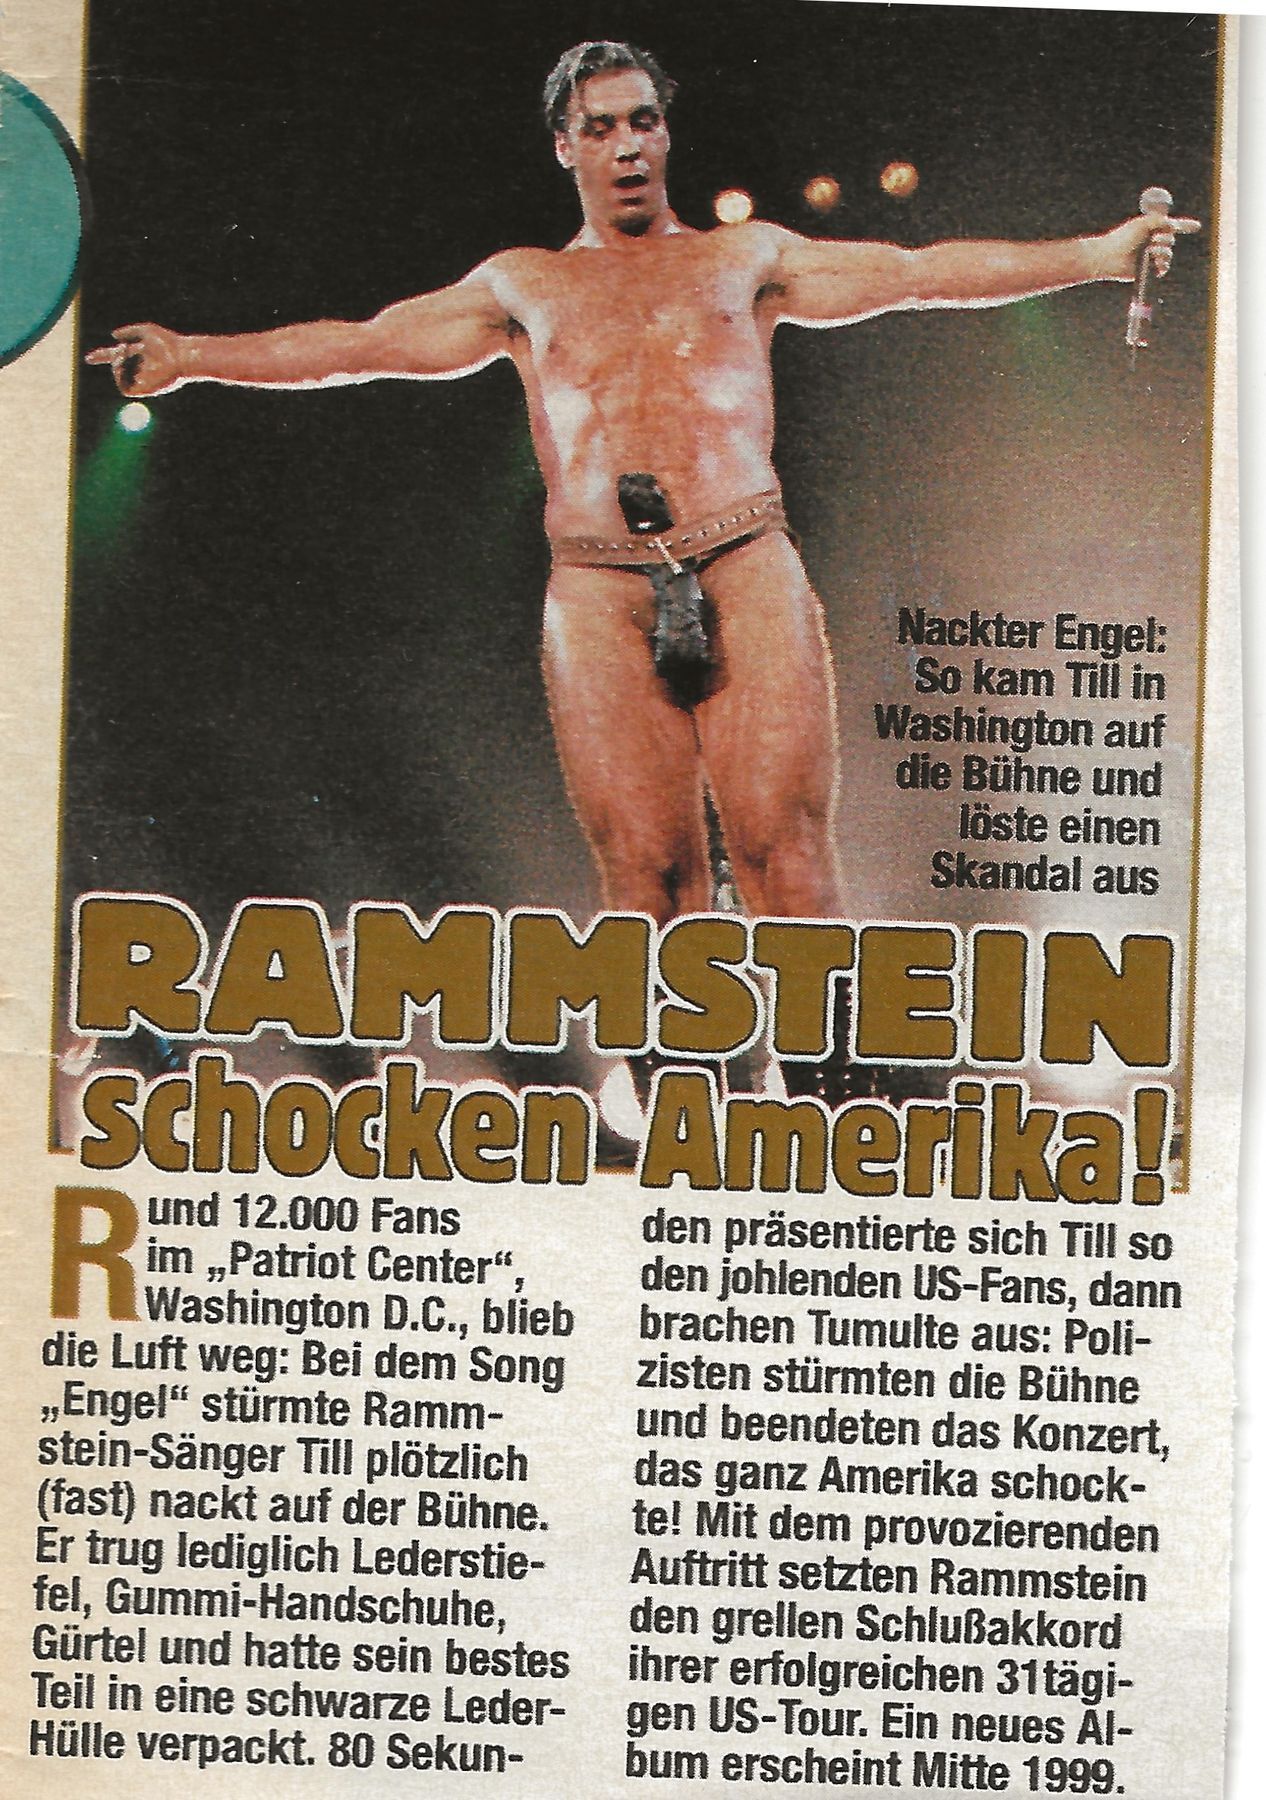 Rammstein naked